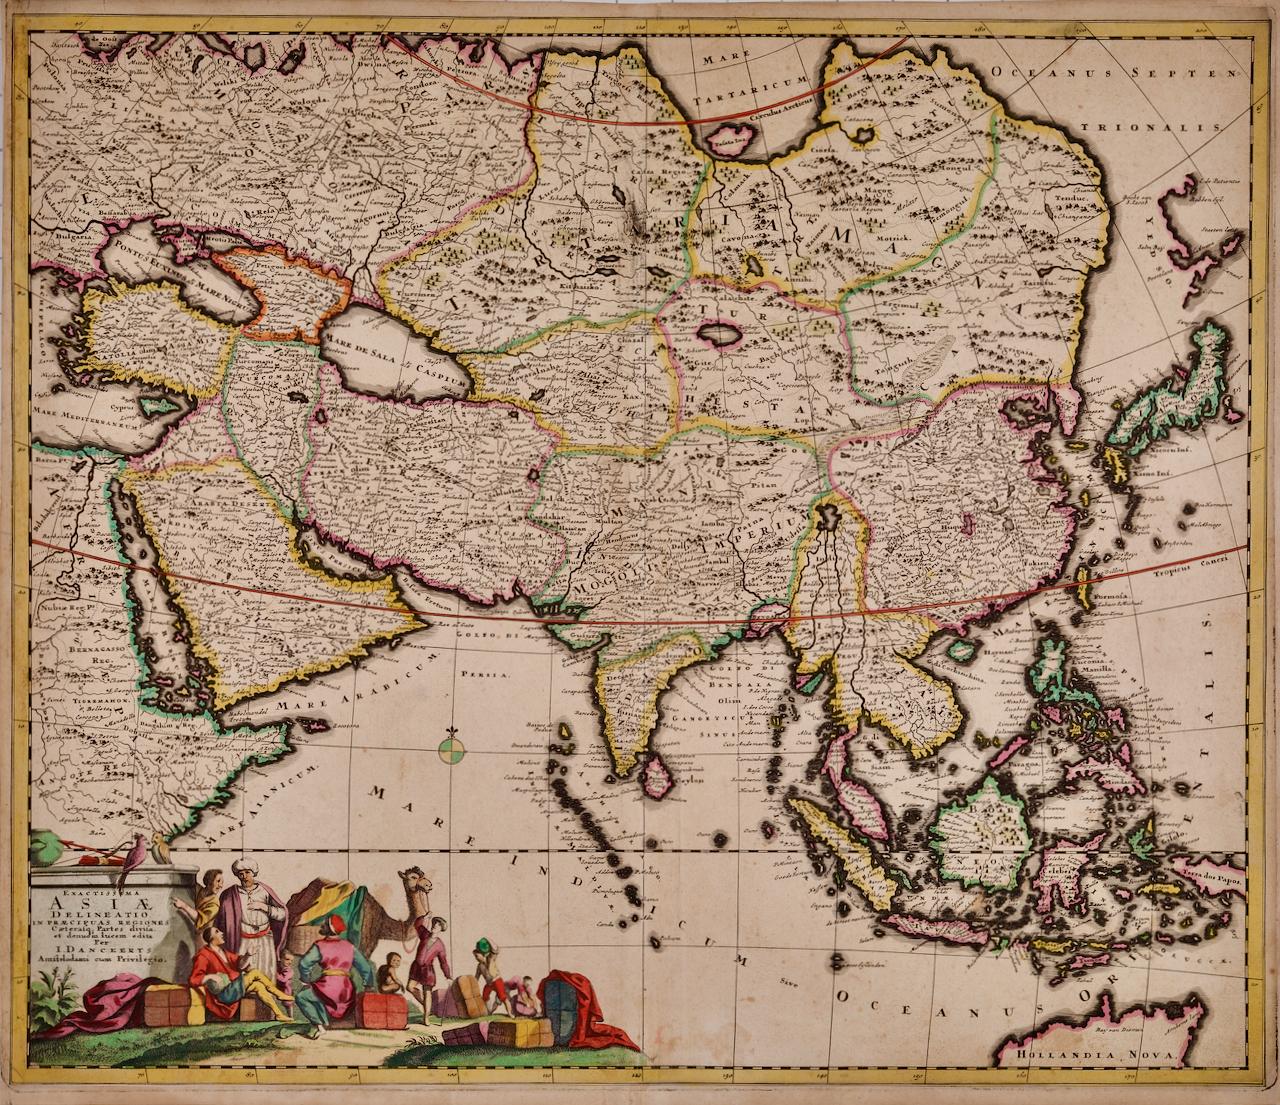 Asie Declineatio : une carte de l'Asie du 17e siècle colorée à la main par Justus Danckerts